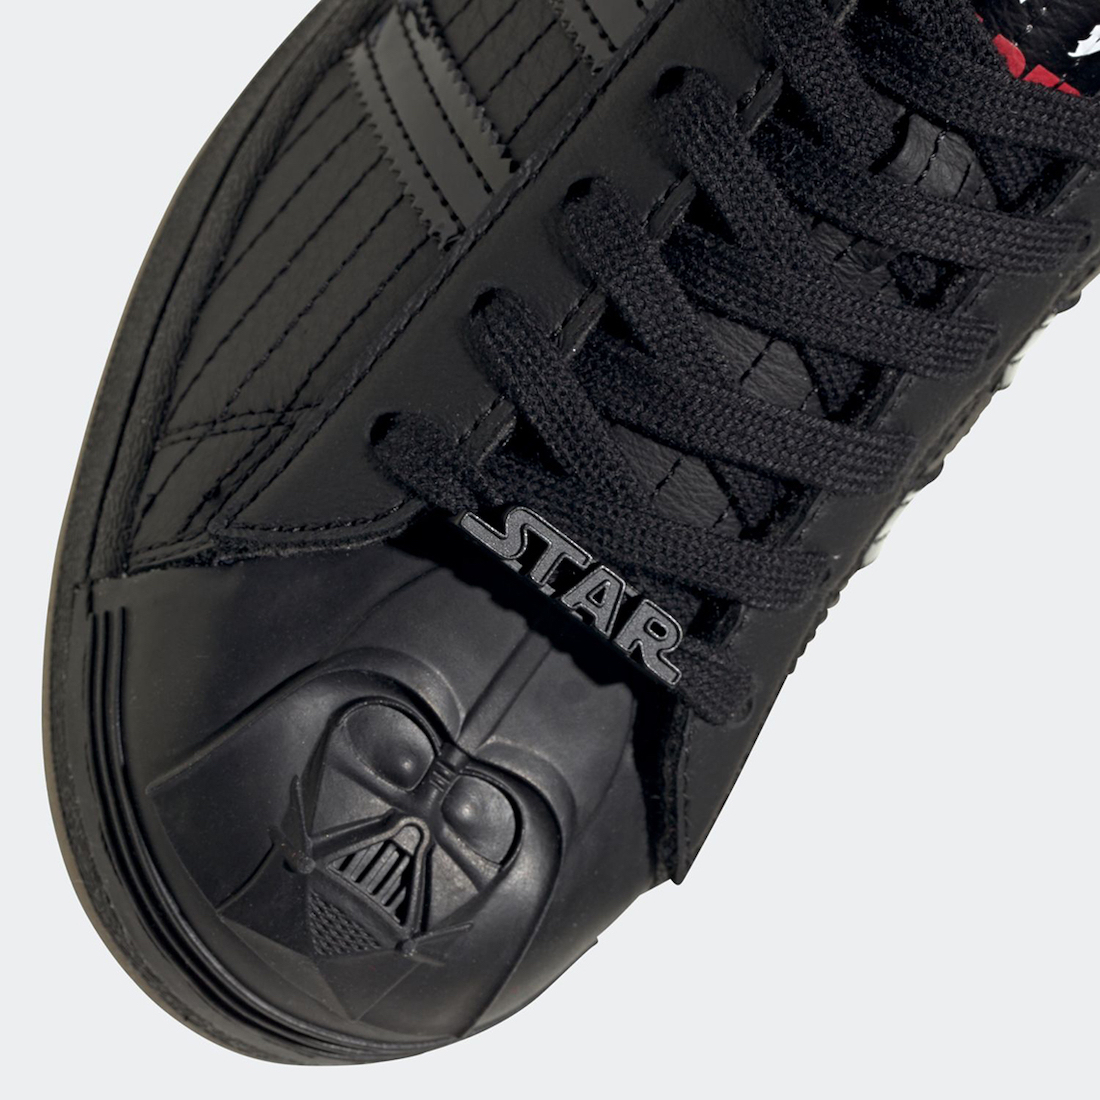 Star Wars adidas Superstar Darth Vader FX9302 Release Date